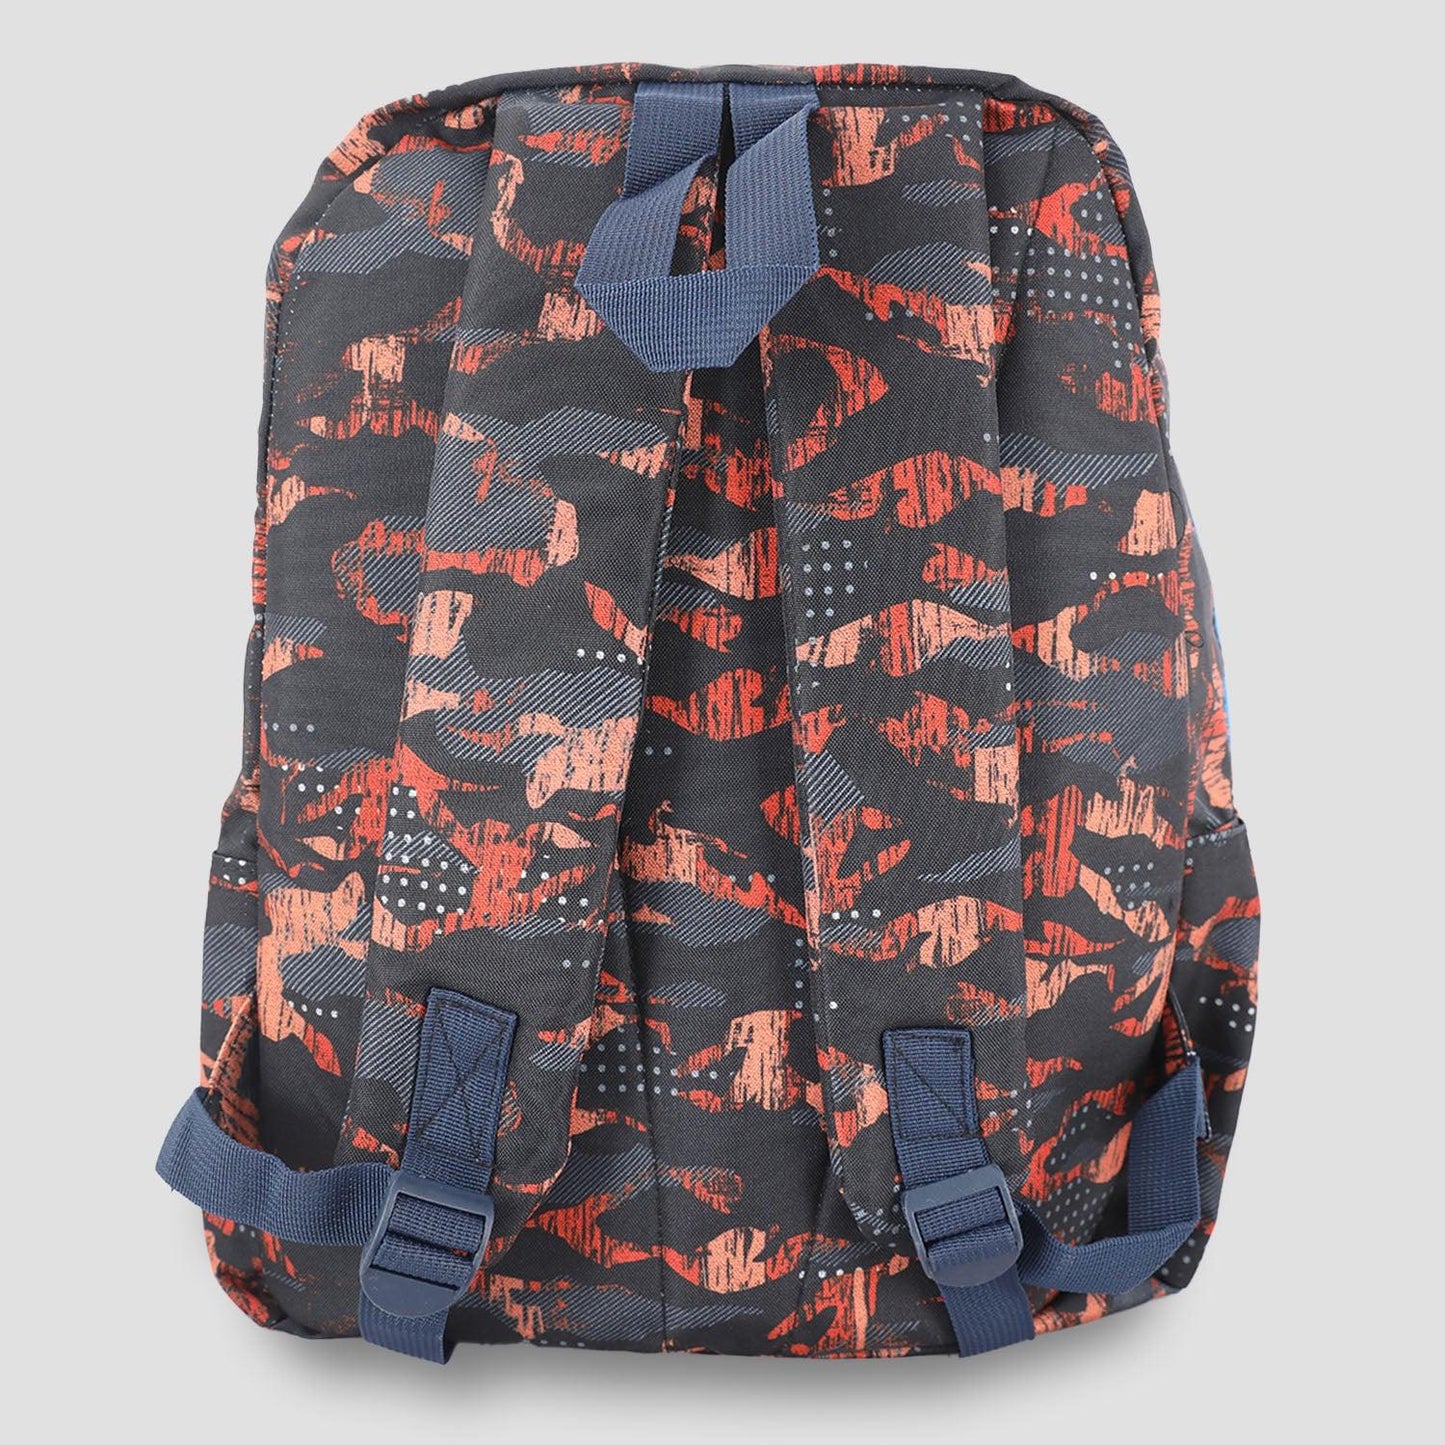 Activ Black & Orange Shades Patterned With Zipper Backpack (6545020420296)